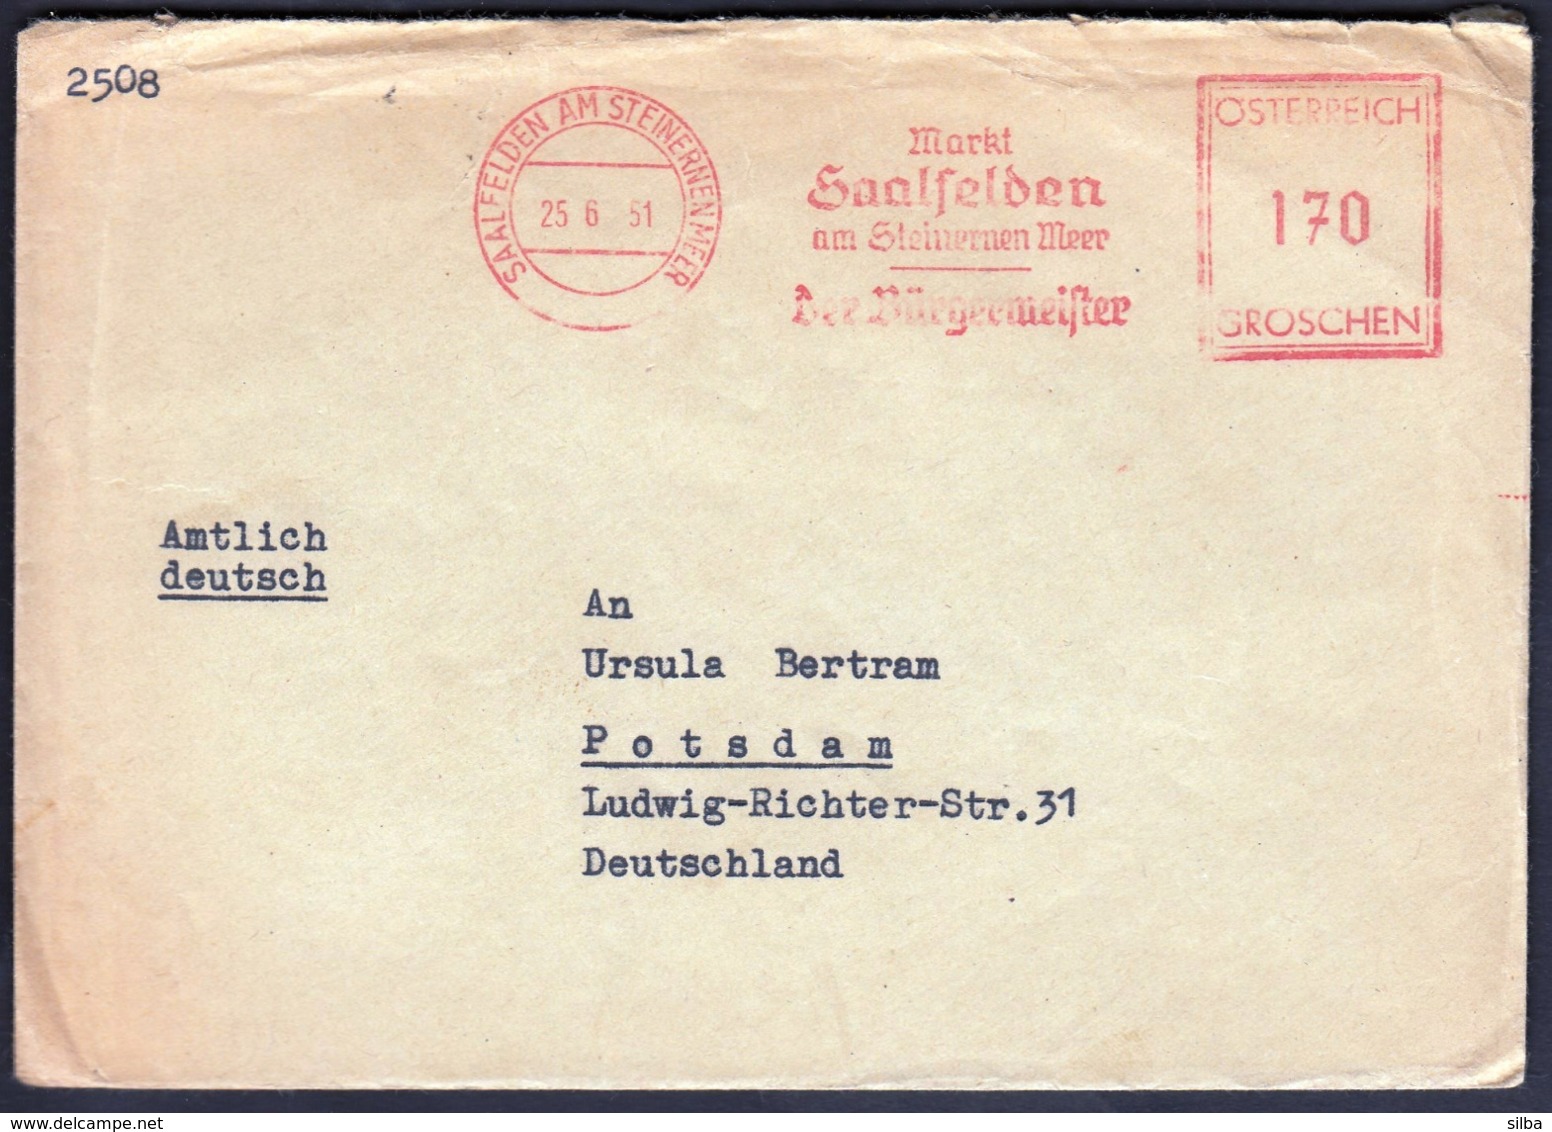 Austria 1951 / Markt Saalfelden Am Steirnernen Meer - Der Burgermeister / Machine Stamp, Flamme, Meter - Covers & Documents